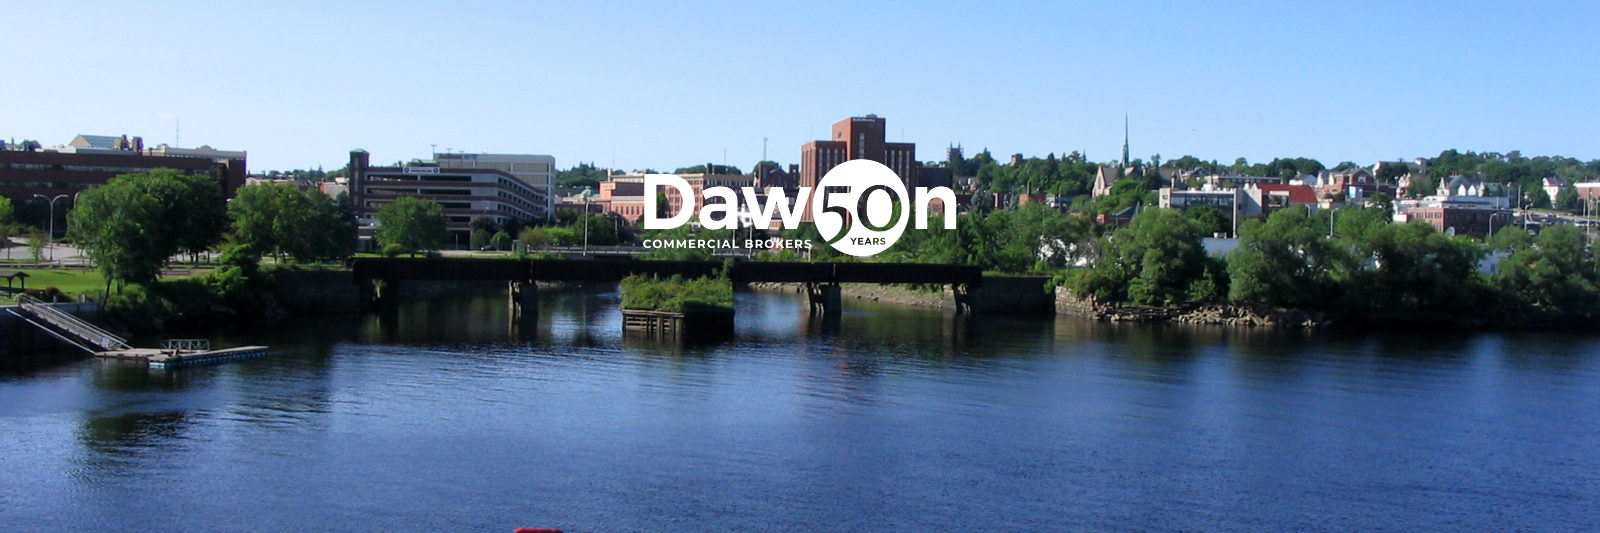 Dawson 50 logo over scenic background